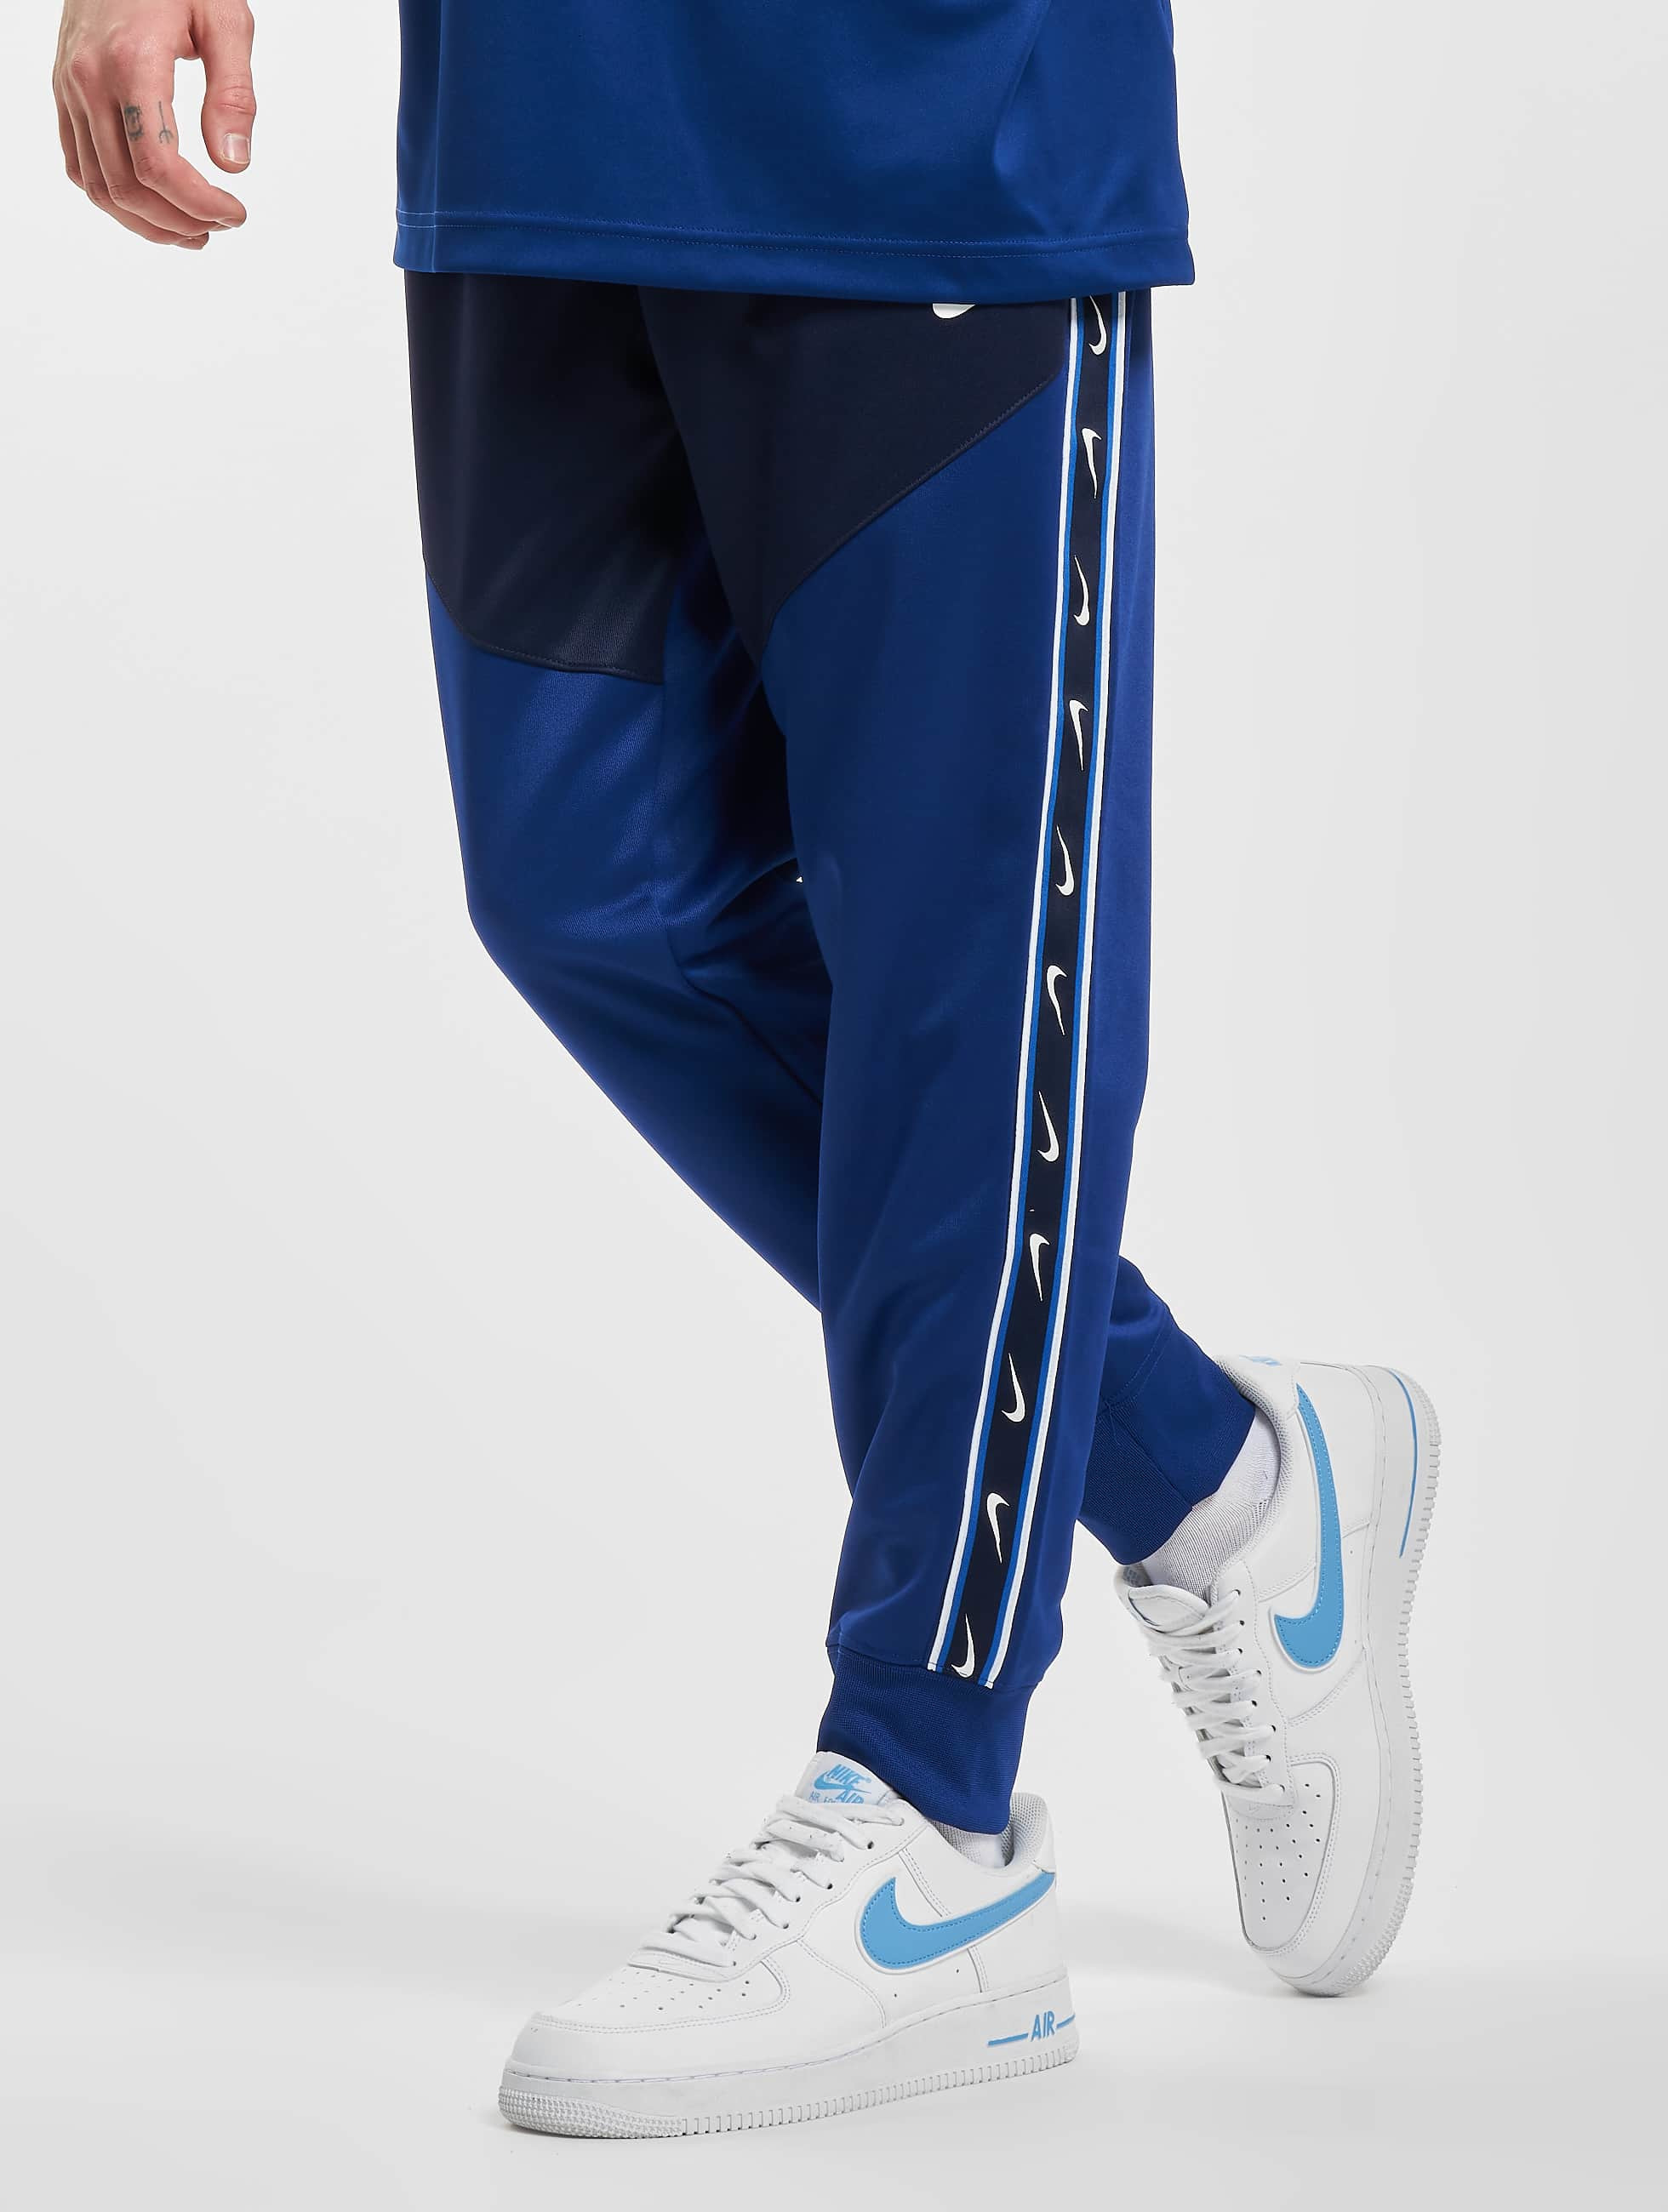 gewelddadig Portier postkantoor Nike broek / joggingbroek NSW Repeat in blauw 975064